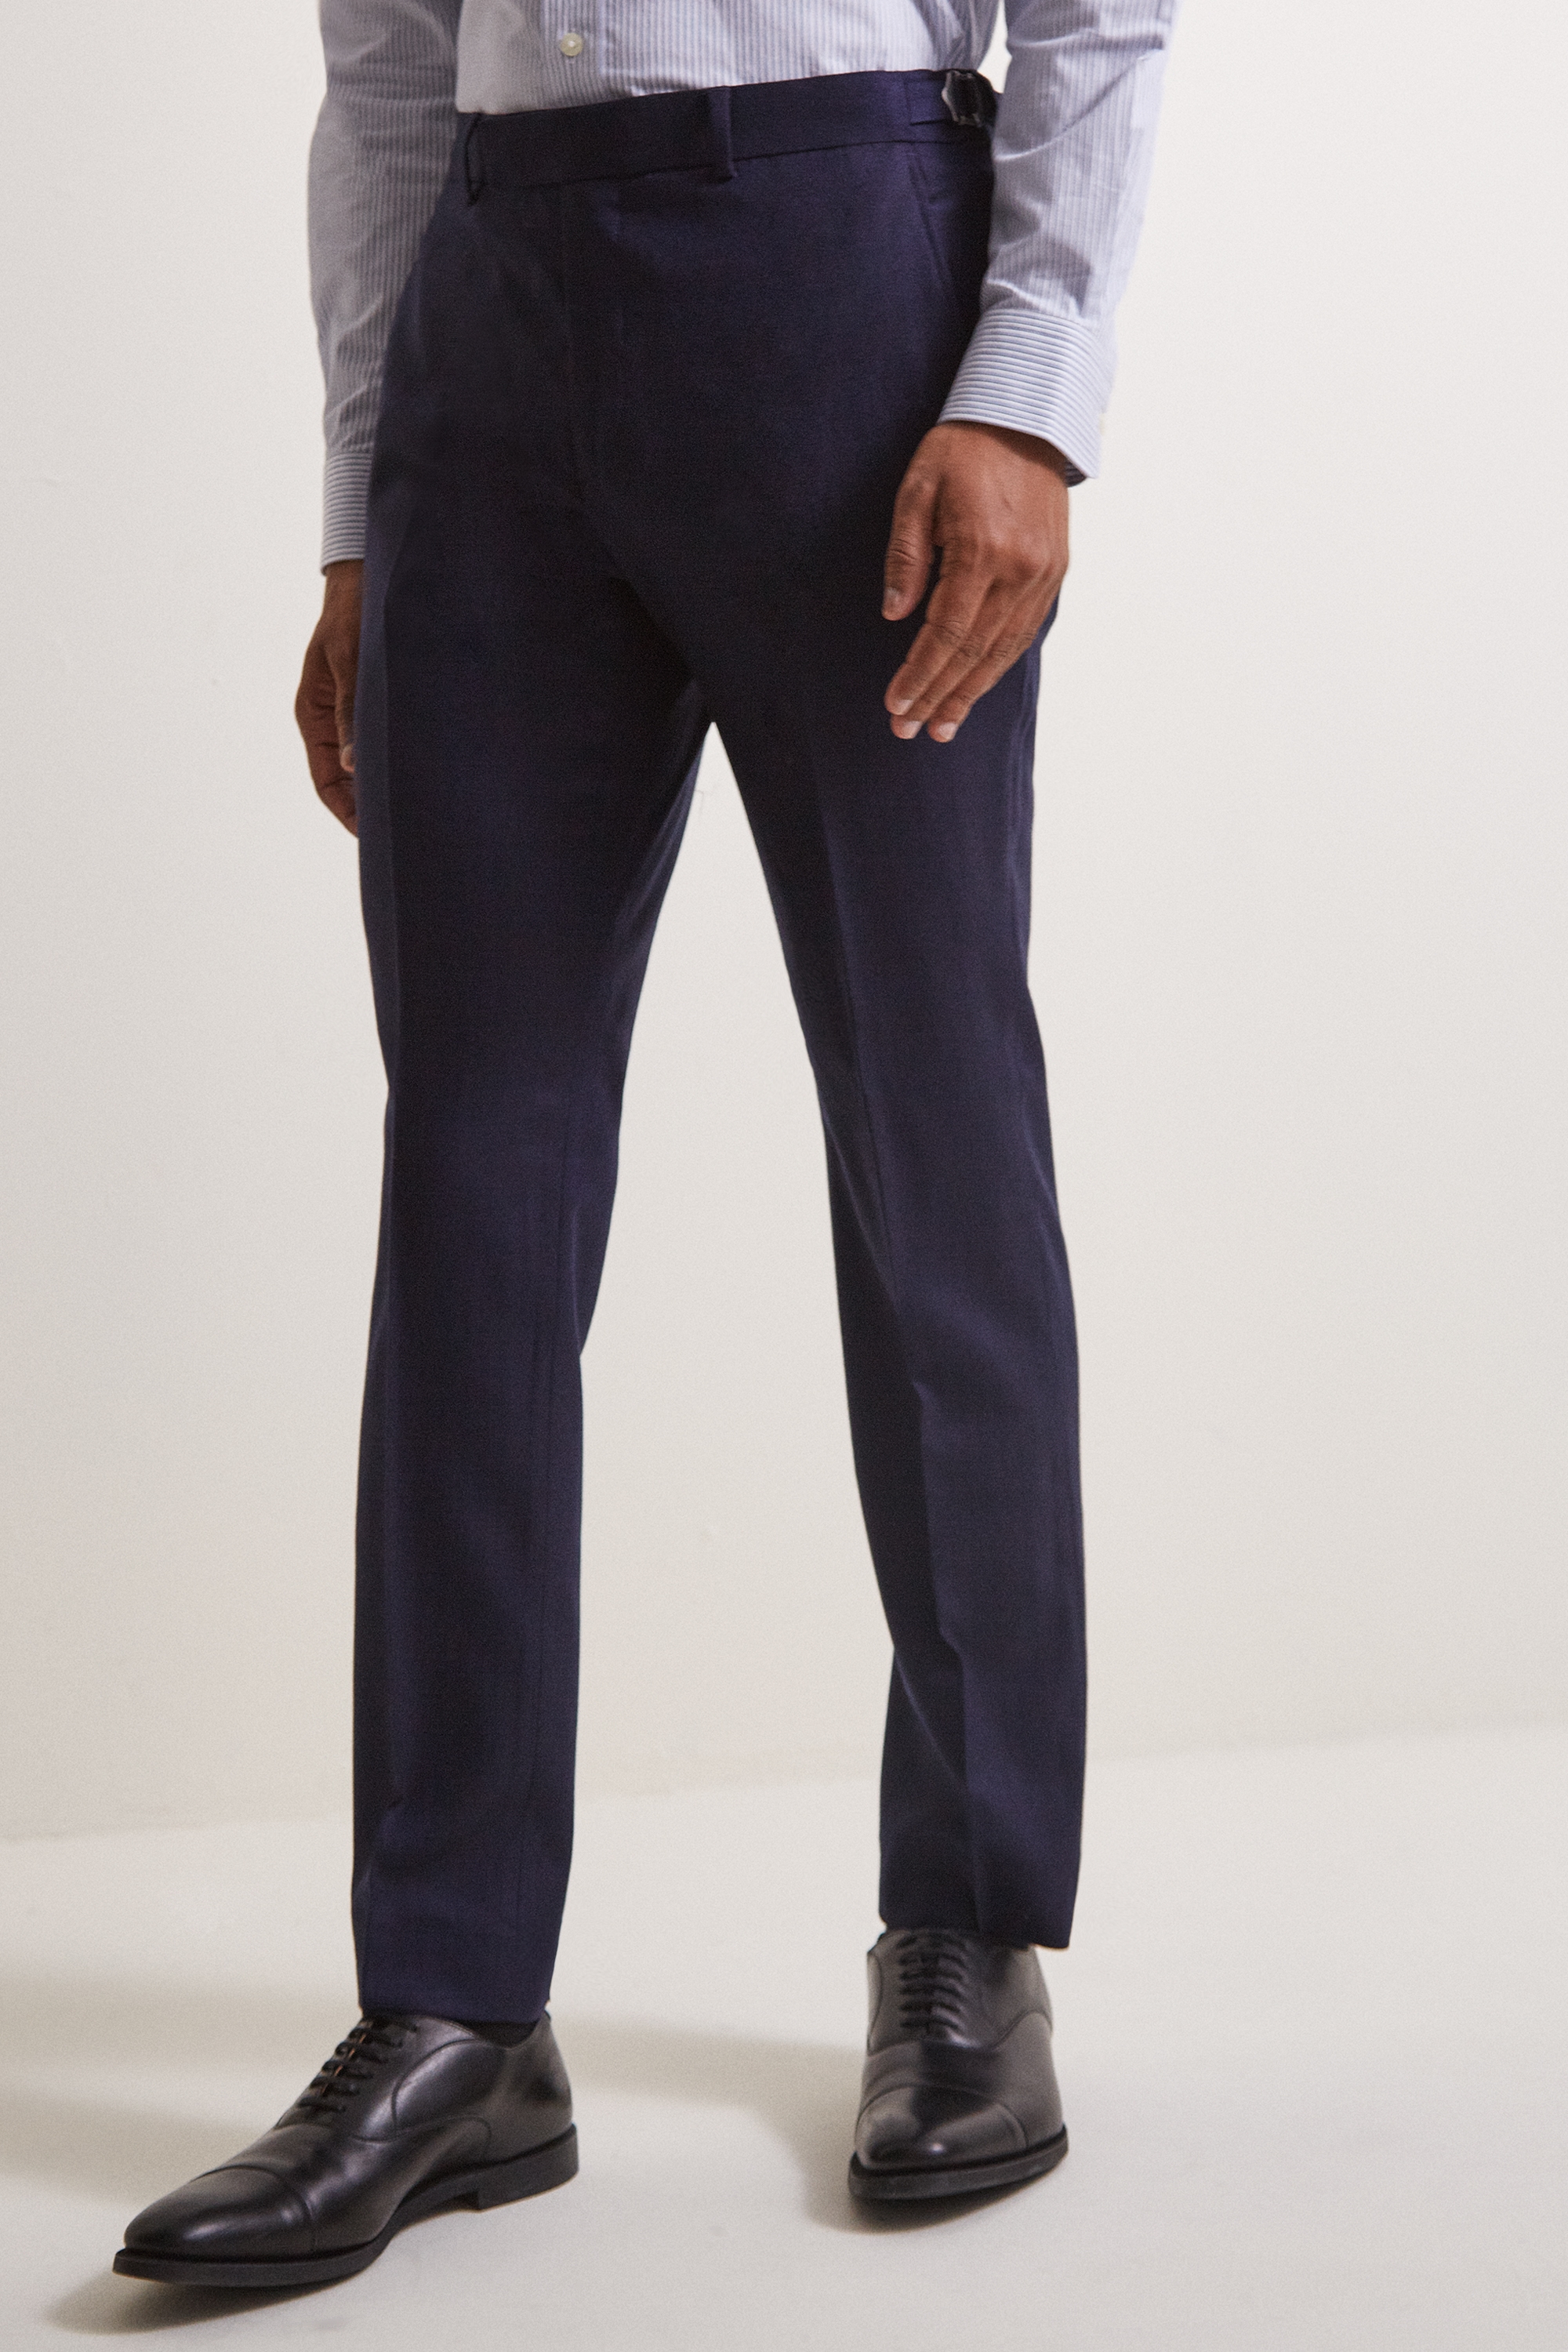 Moss London Premium Slim Fit Ink Herringbone Tweed Trousers